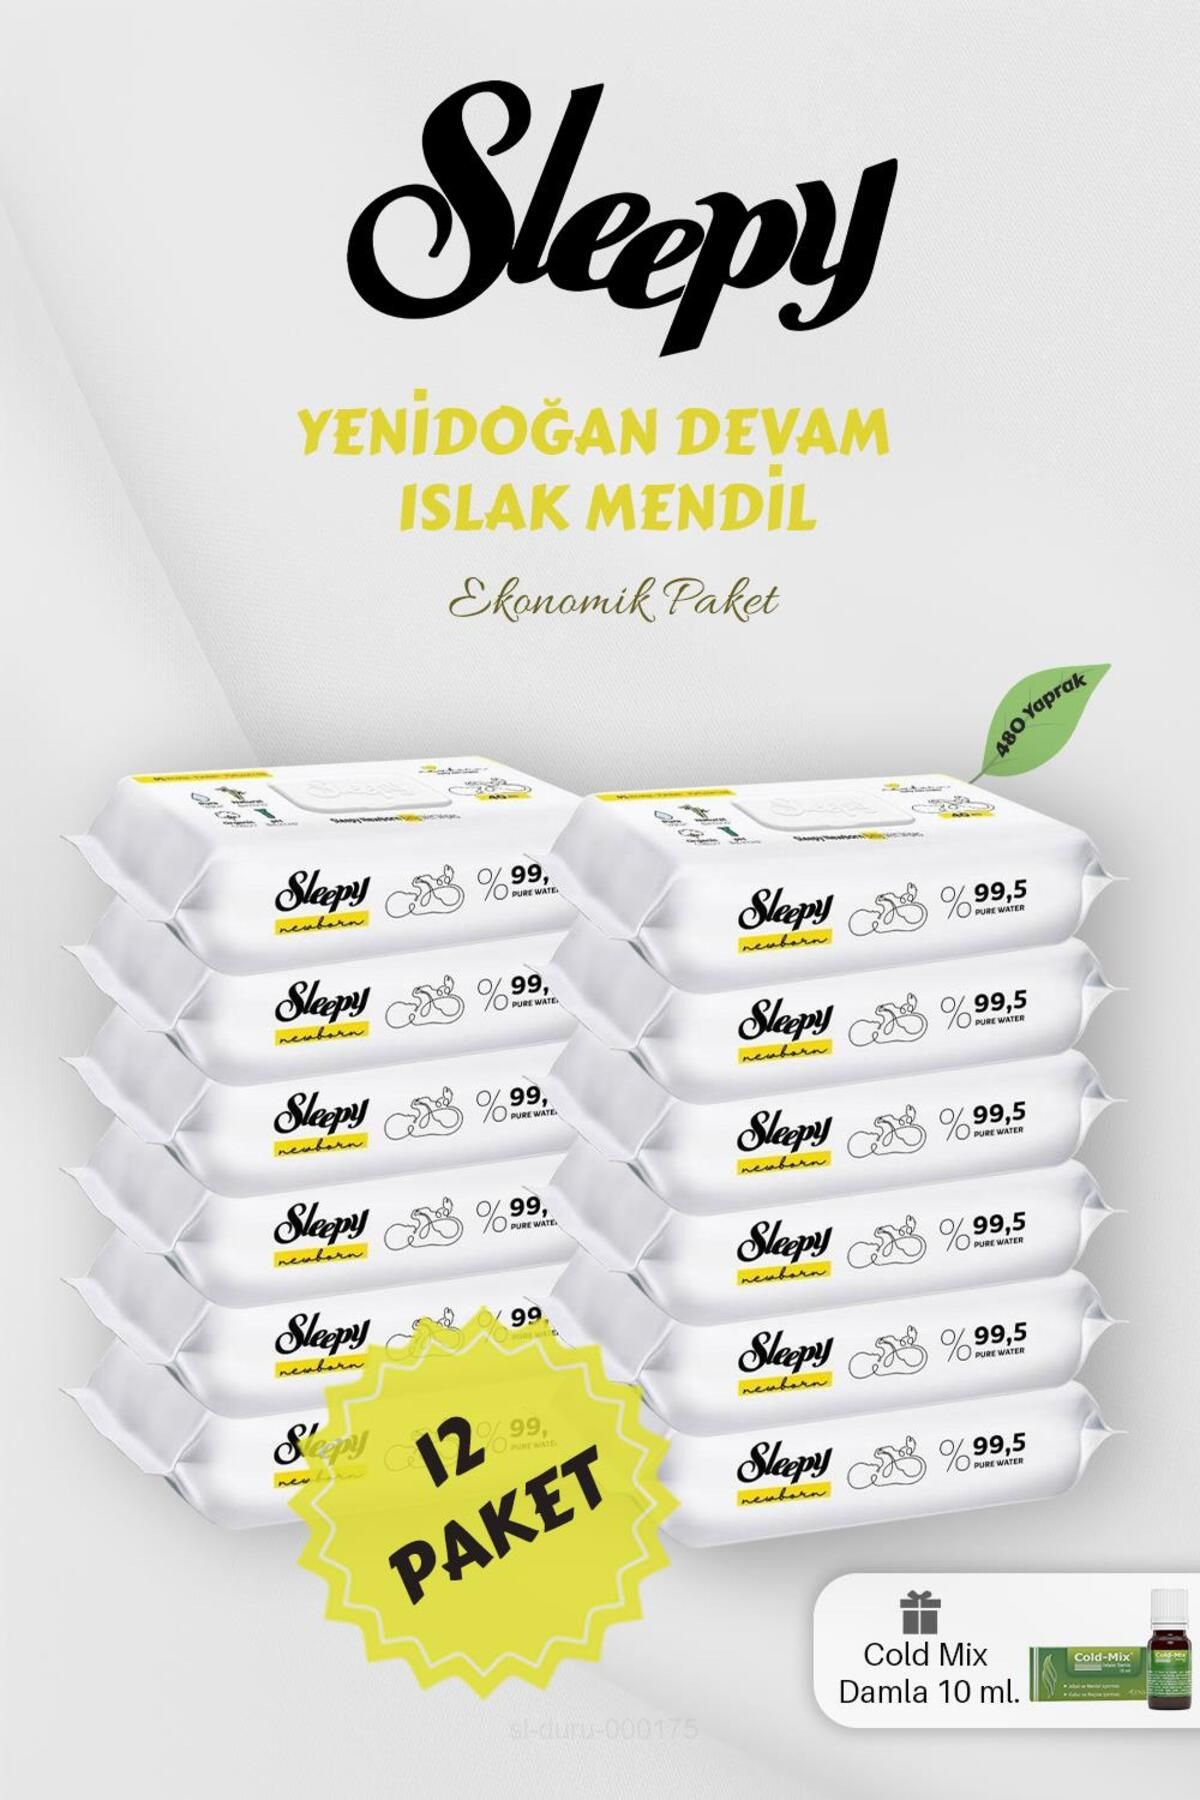 Sleepy Yenidoğan Devam 40' lı Islak Mendil 12 Paket Yeşil Cold Mix Hediyeli